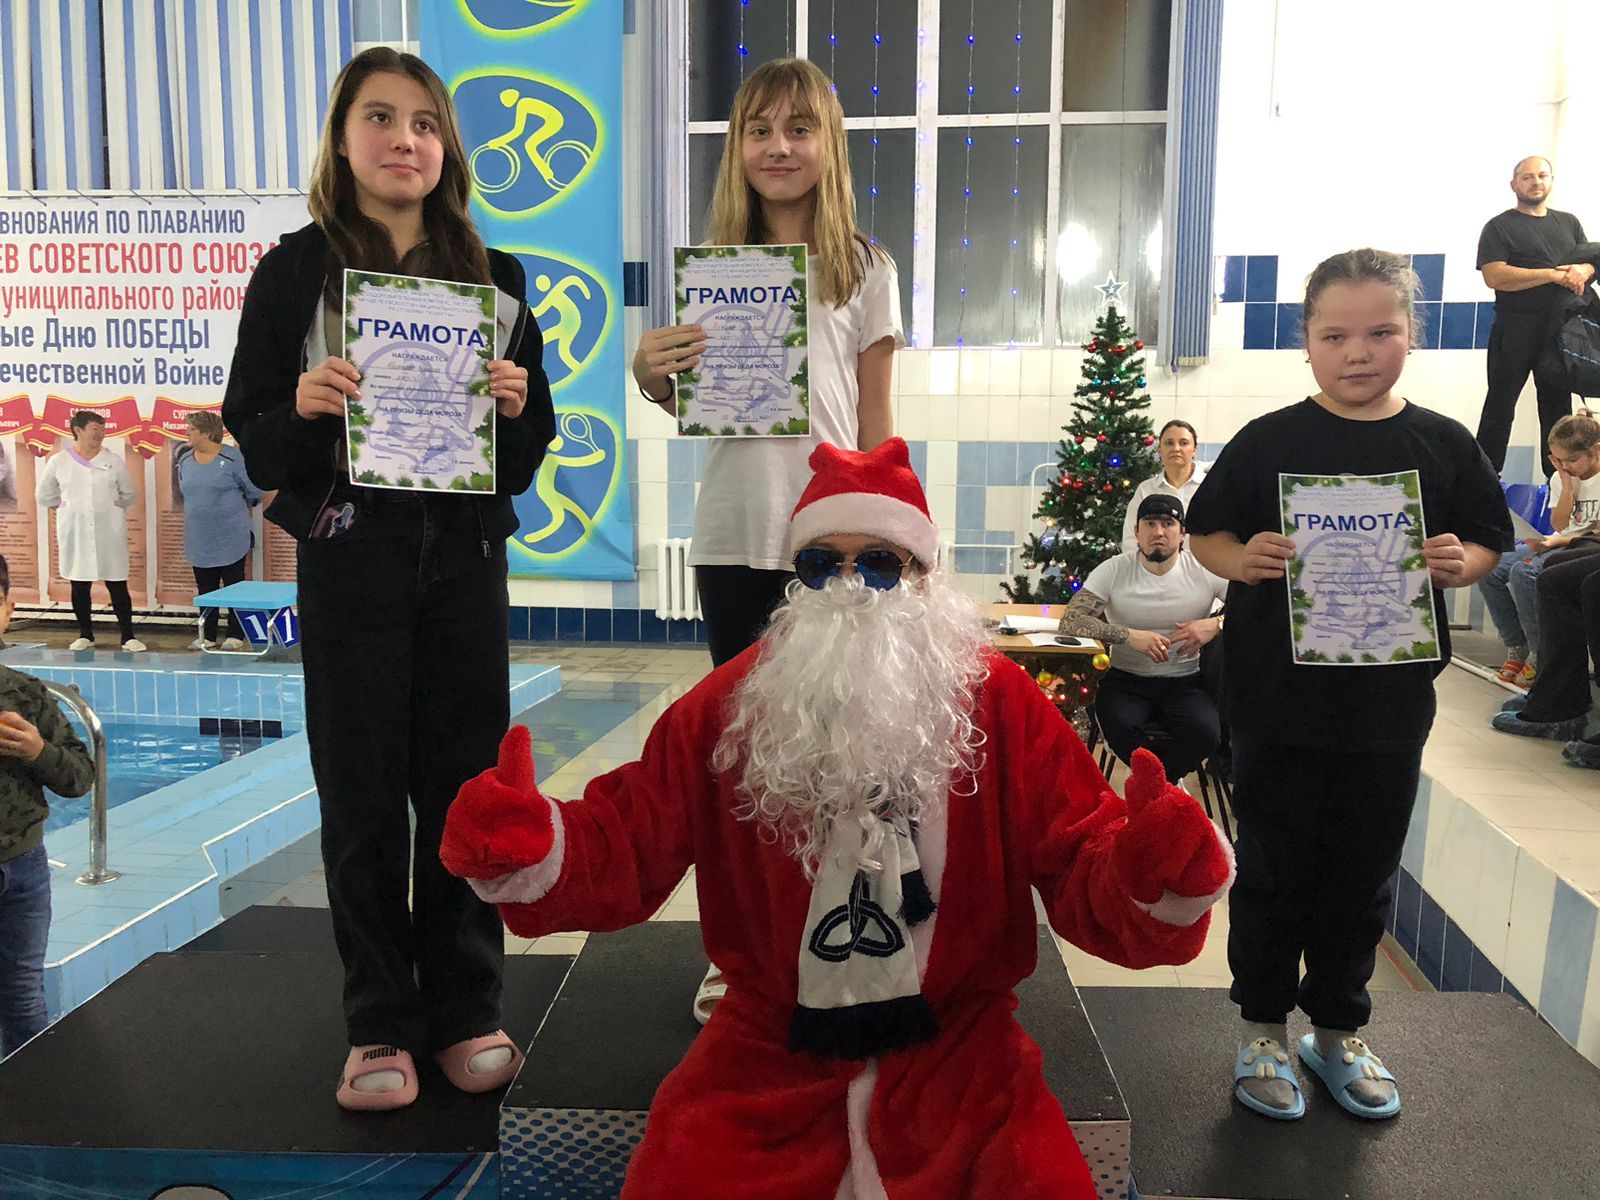 В оздоровительном комплексе «Нептун» Менделеевска провели соревнование по плаванию на призы Деда Мороза